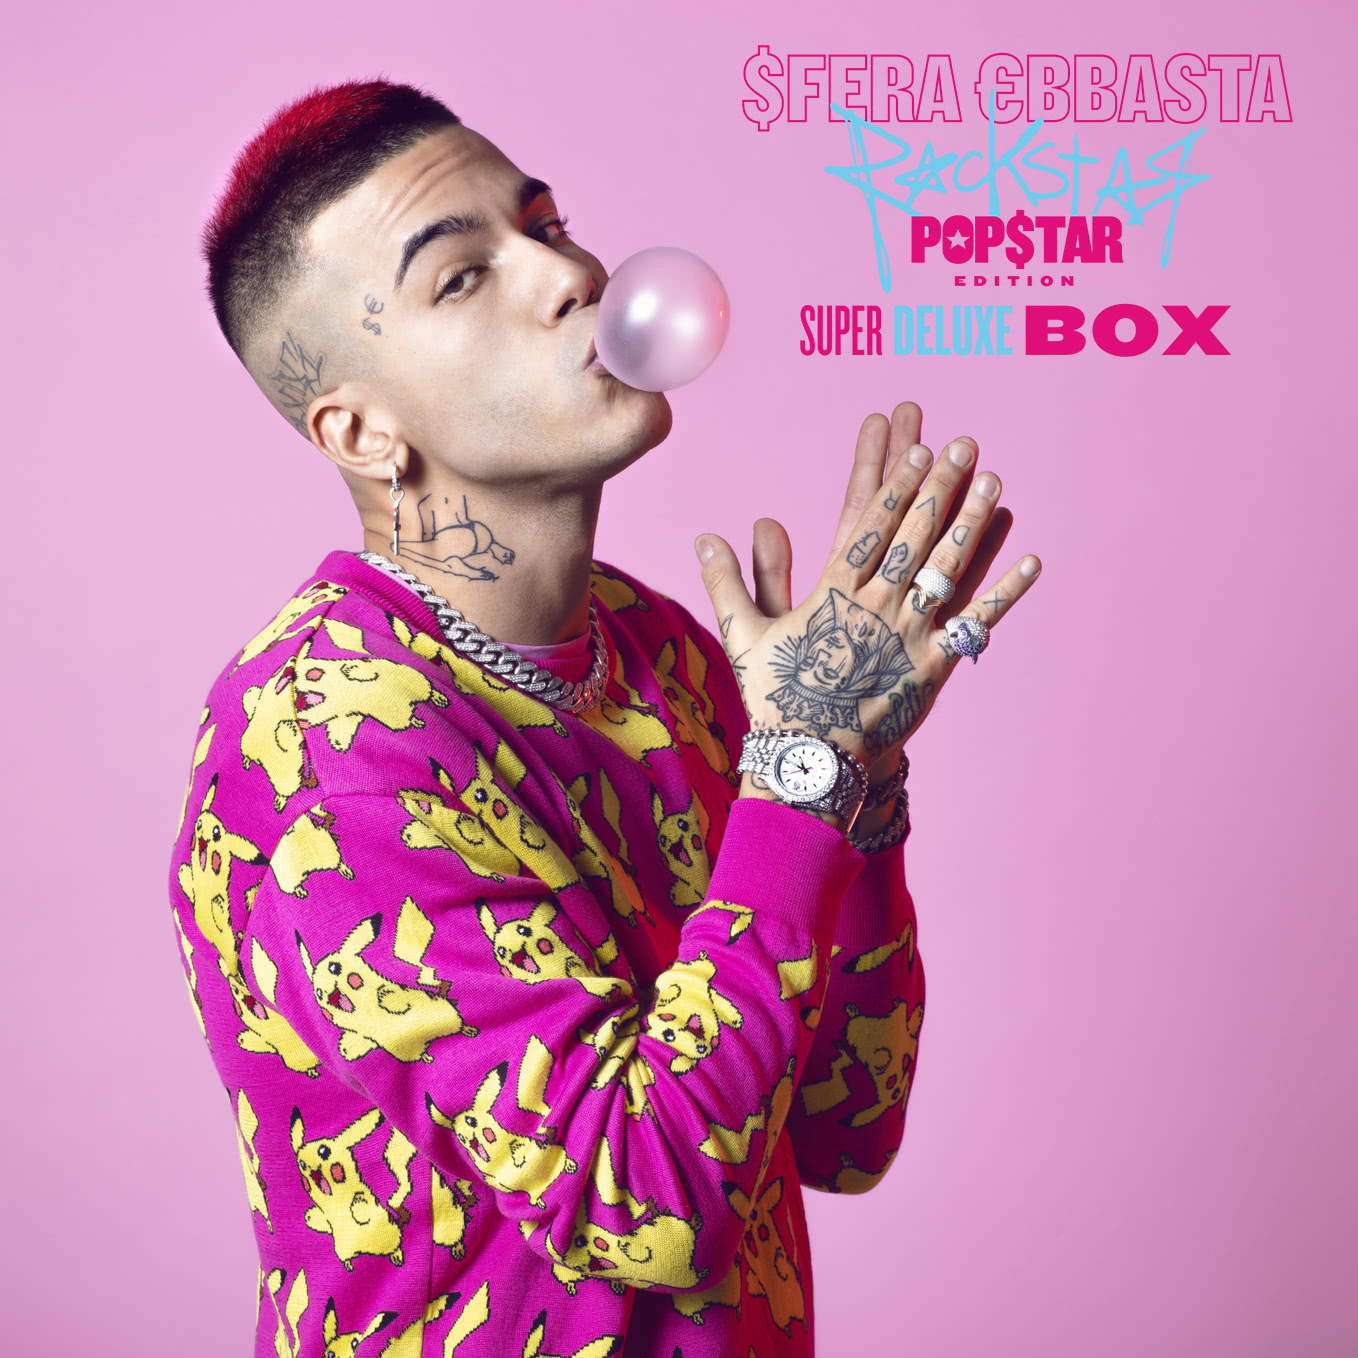 Sfera Ebbasta - Rockstar (Popstar Edition): lyrics and songs